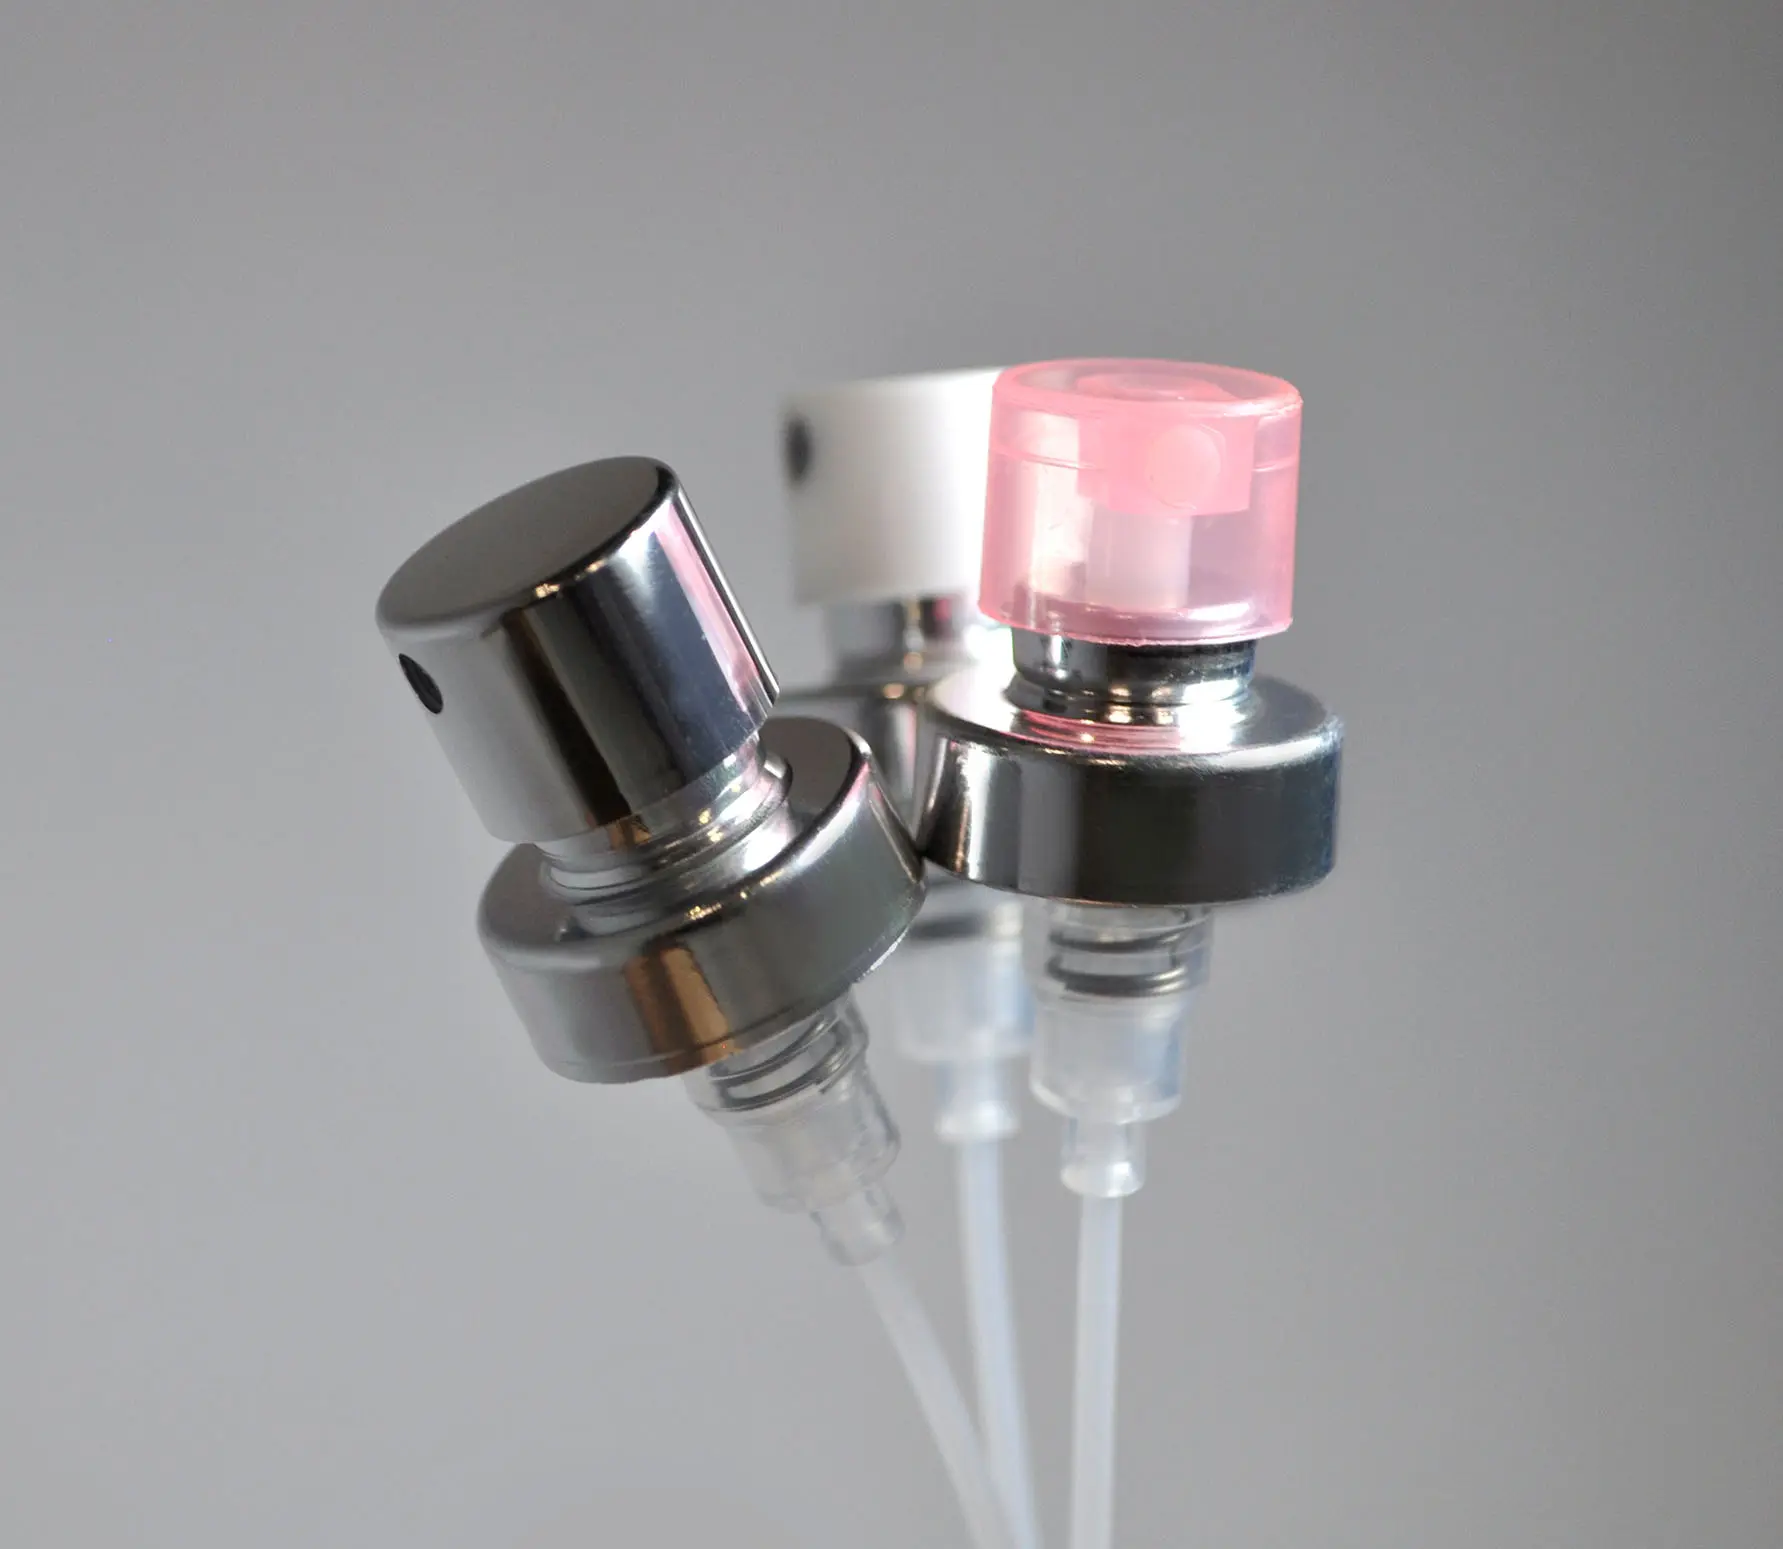 valvulas atomizadoras para perfumes - Cómo se llama la valvula de los perfumes